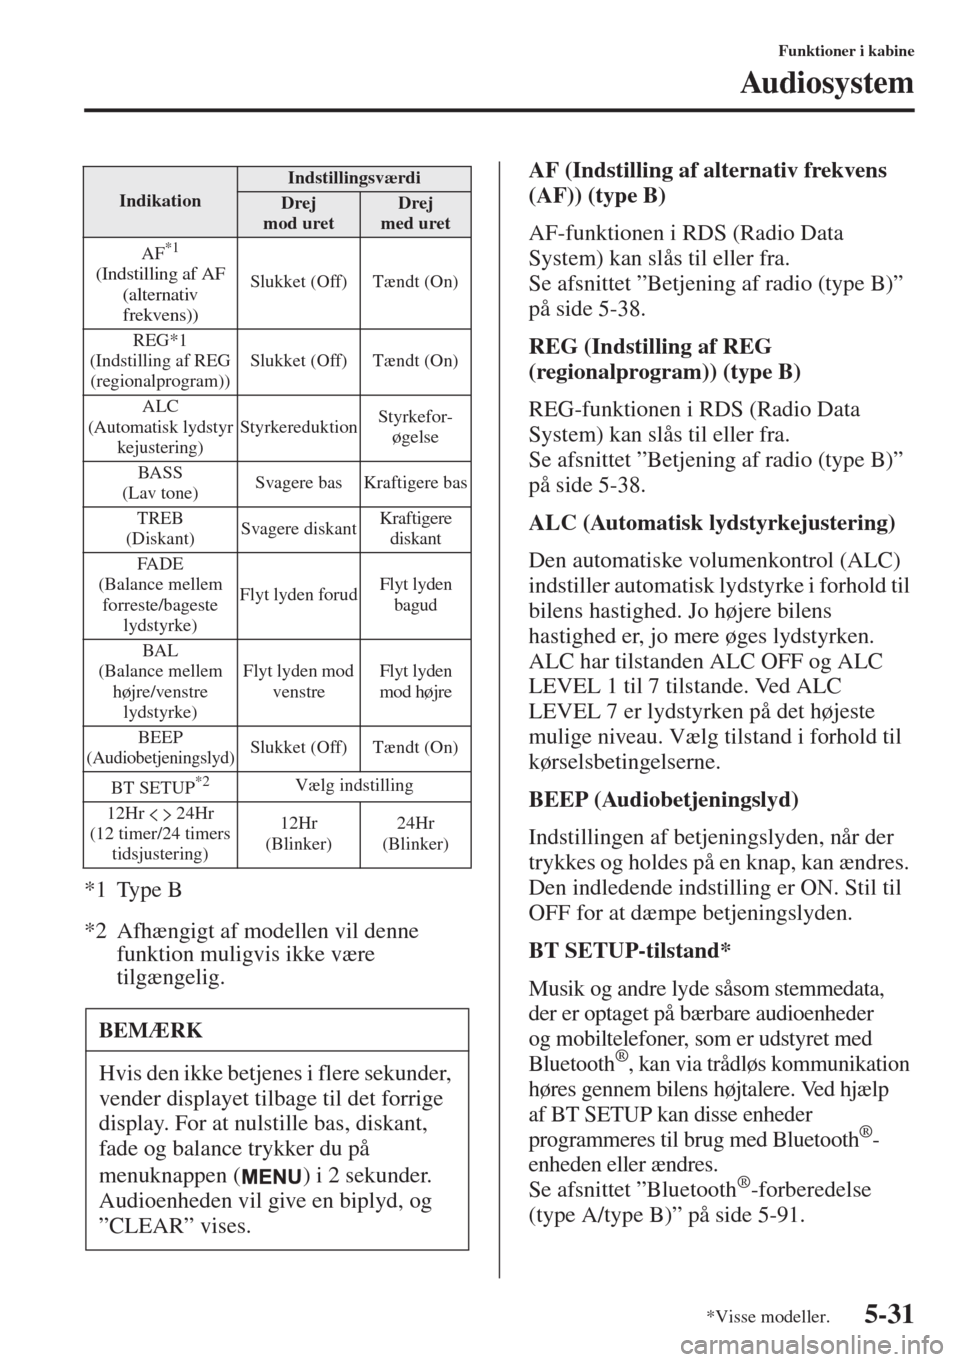 MAZDA MODEL 6 2015  Instruktionsbog (in Danish) 5-31
Funktioner i kabine
Audiosystem
*1 Type B
*2 Afhængigt af modellen vil denne 
funktion muligvis ikke være 
tilgængelig.AF (Indstilling af alternativ frekvens 
(AF)) (type B)
AF-funktionen i RD